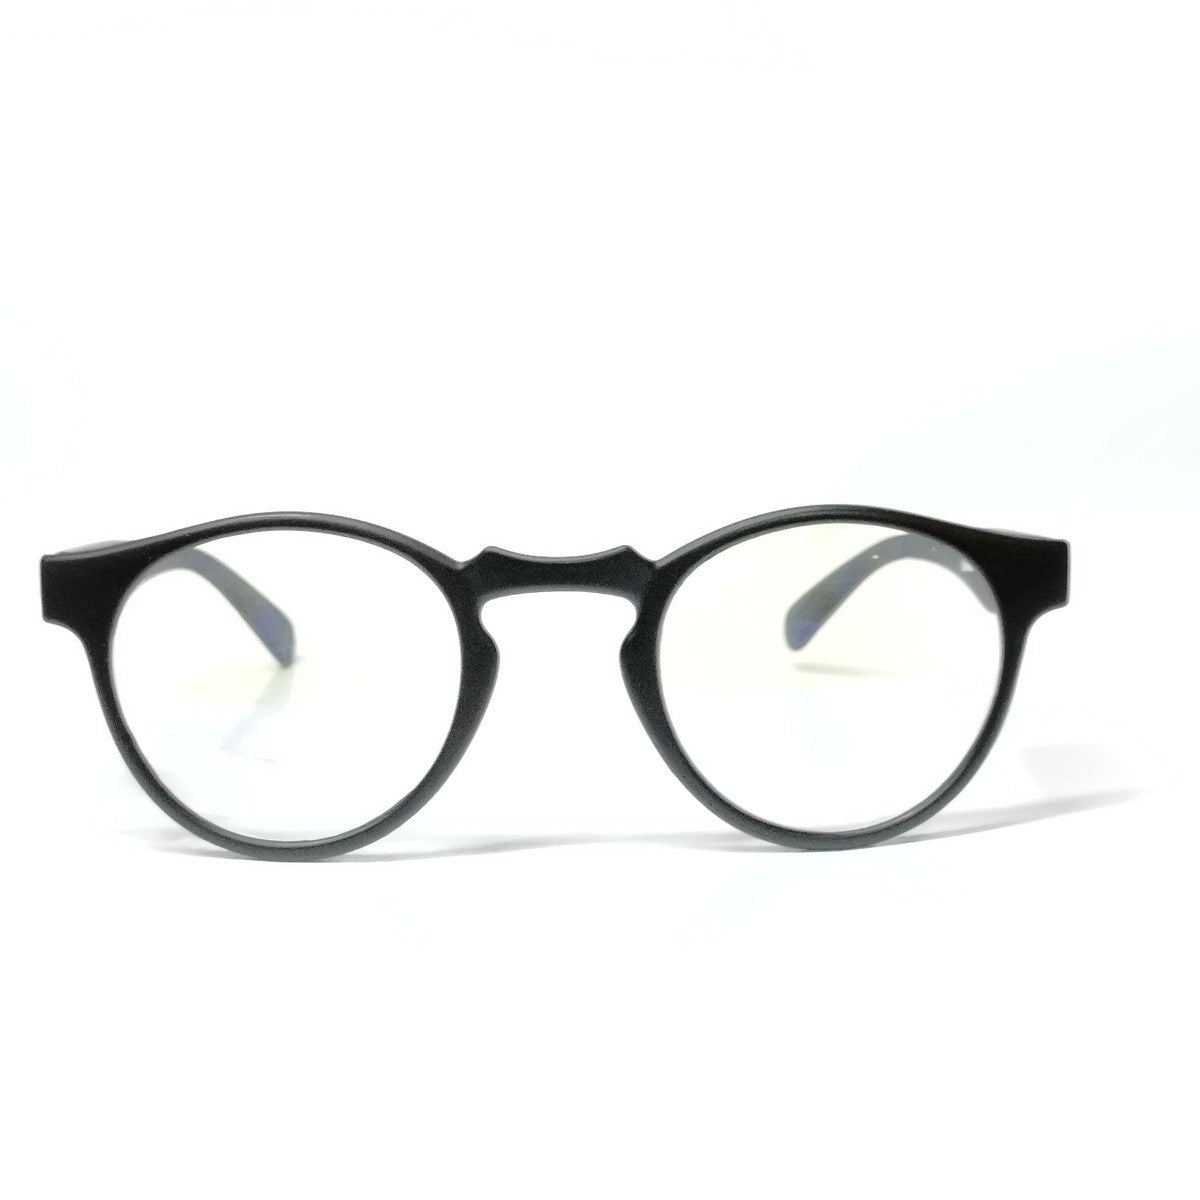 Matt Black Round Progressive Glasses  for Computers Multifocal Reading Glasses for Men Women